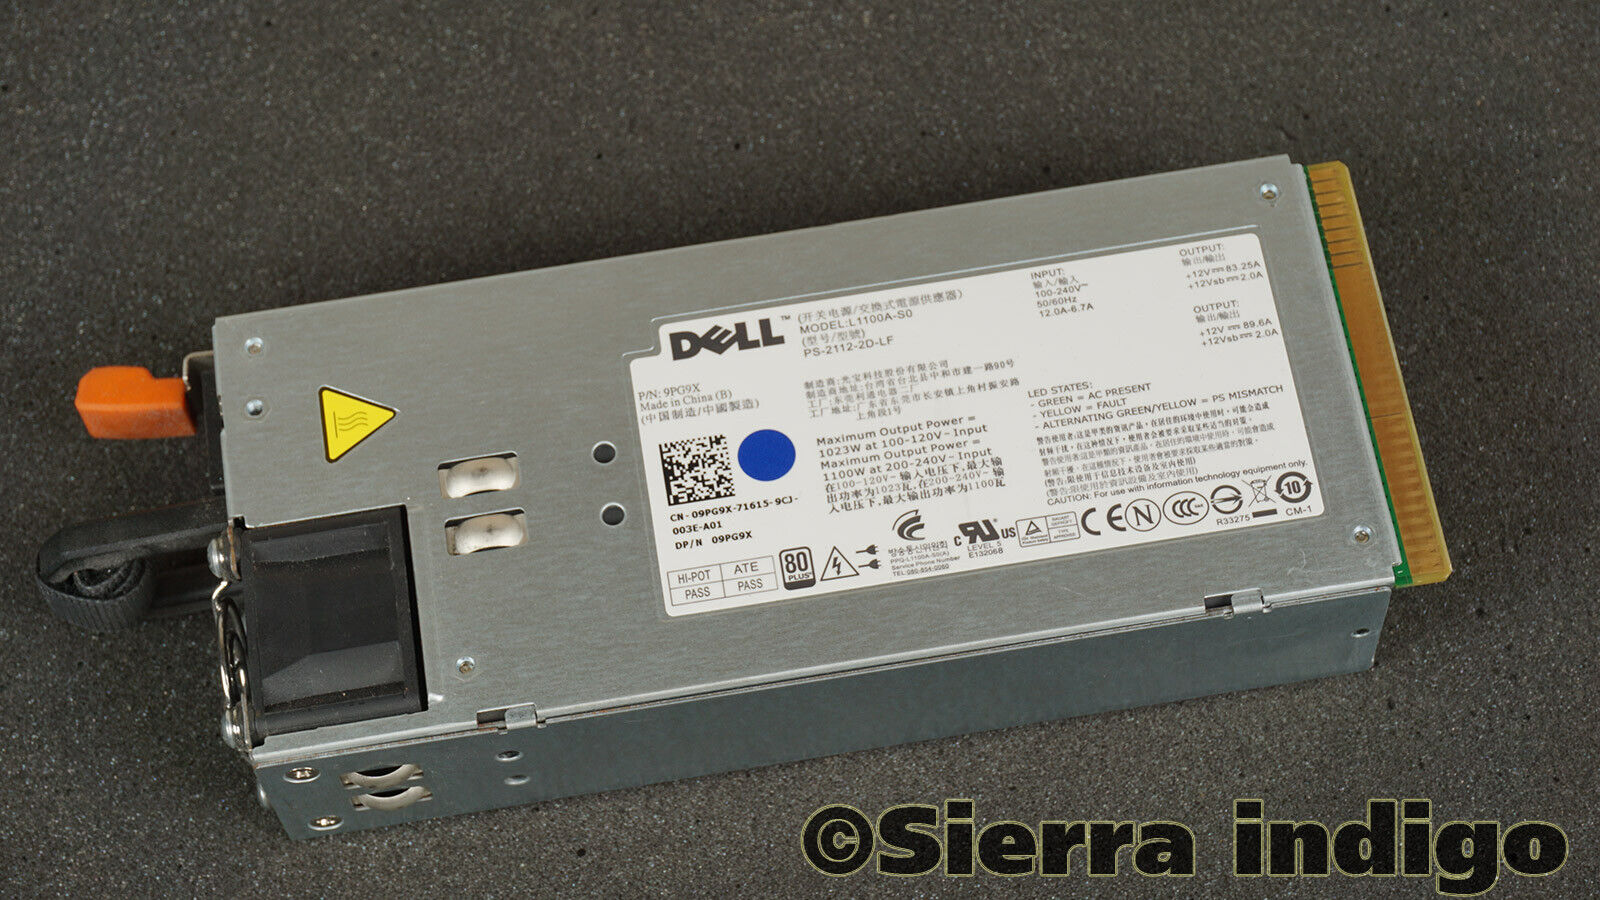 9PG9X 09PG9X Dell Power Supply L1100A-S0 PS-2112-2D-LF 1100W PSU